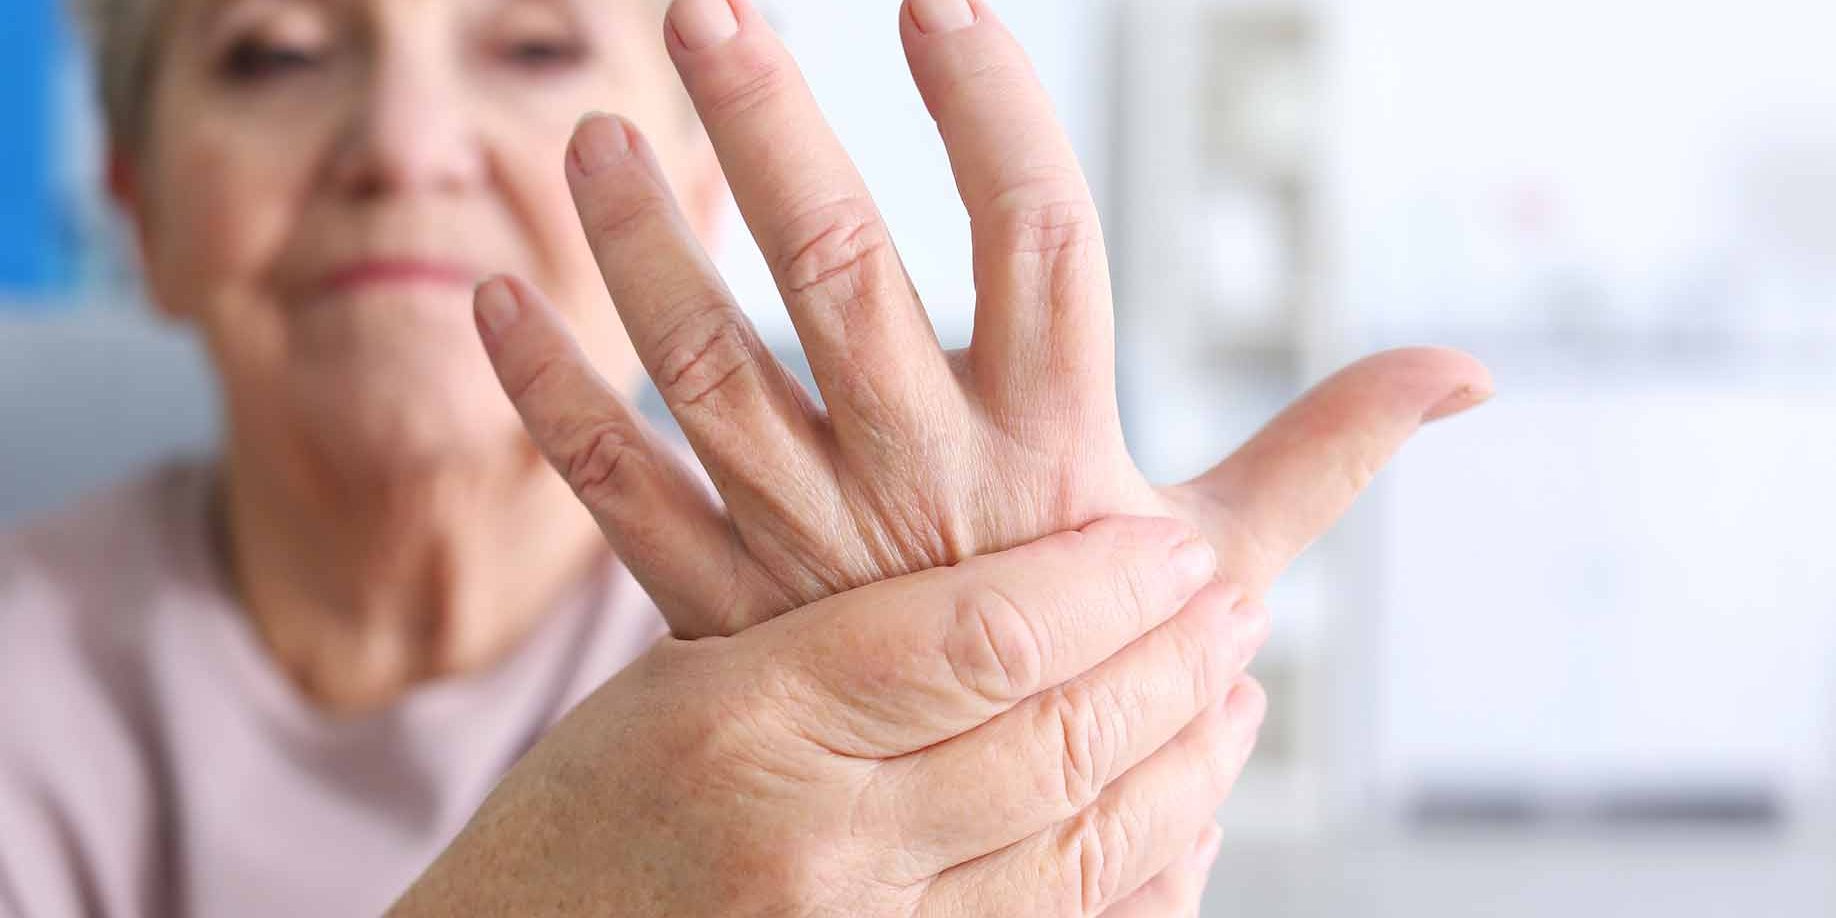 gydymas reumatoidiniam artritui rankų pakuotės išpurškimus į artrozės siūlės